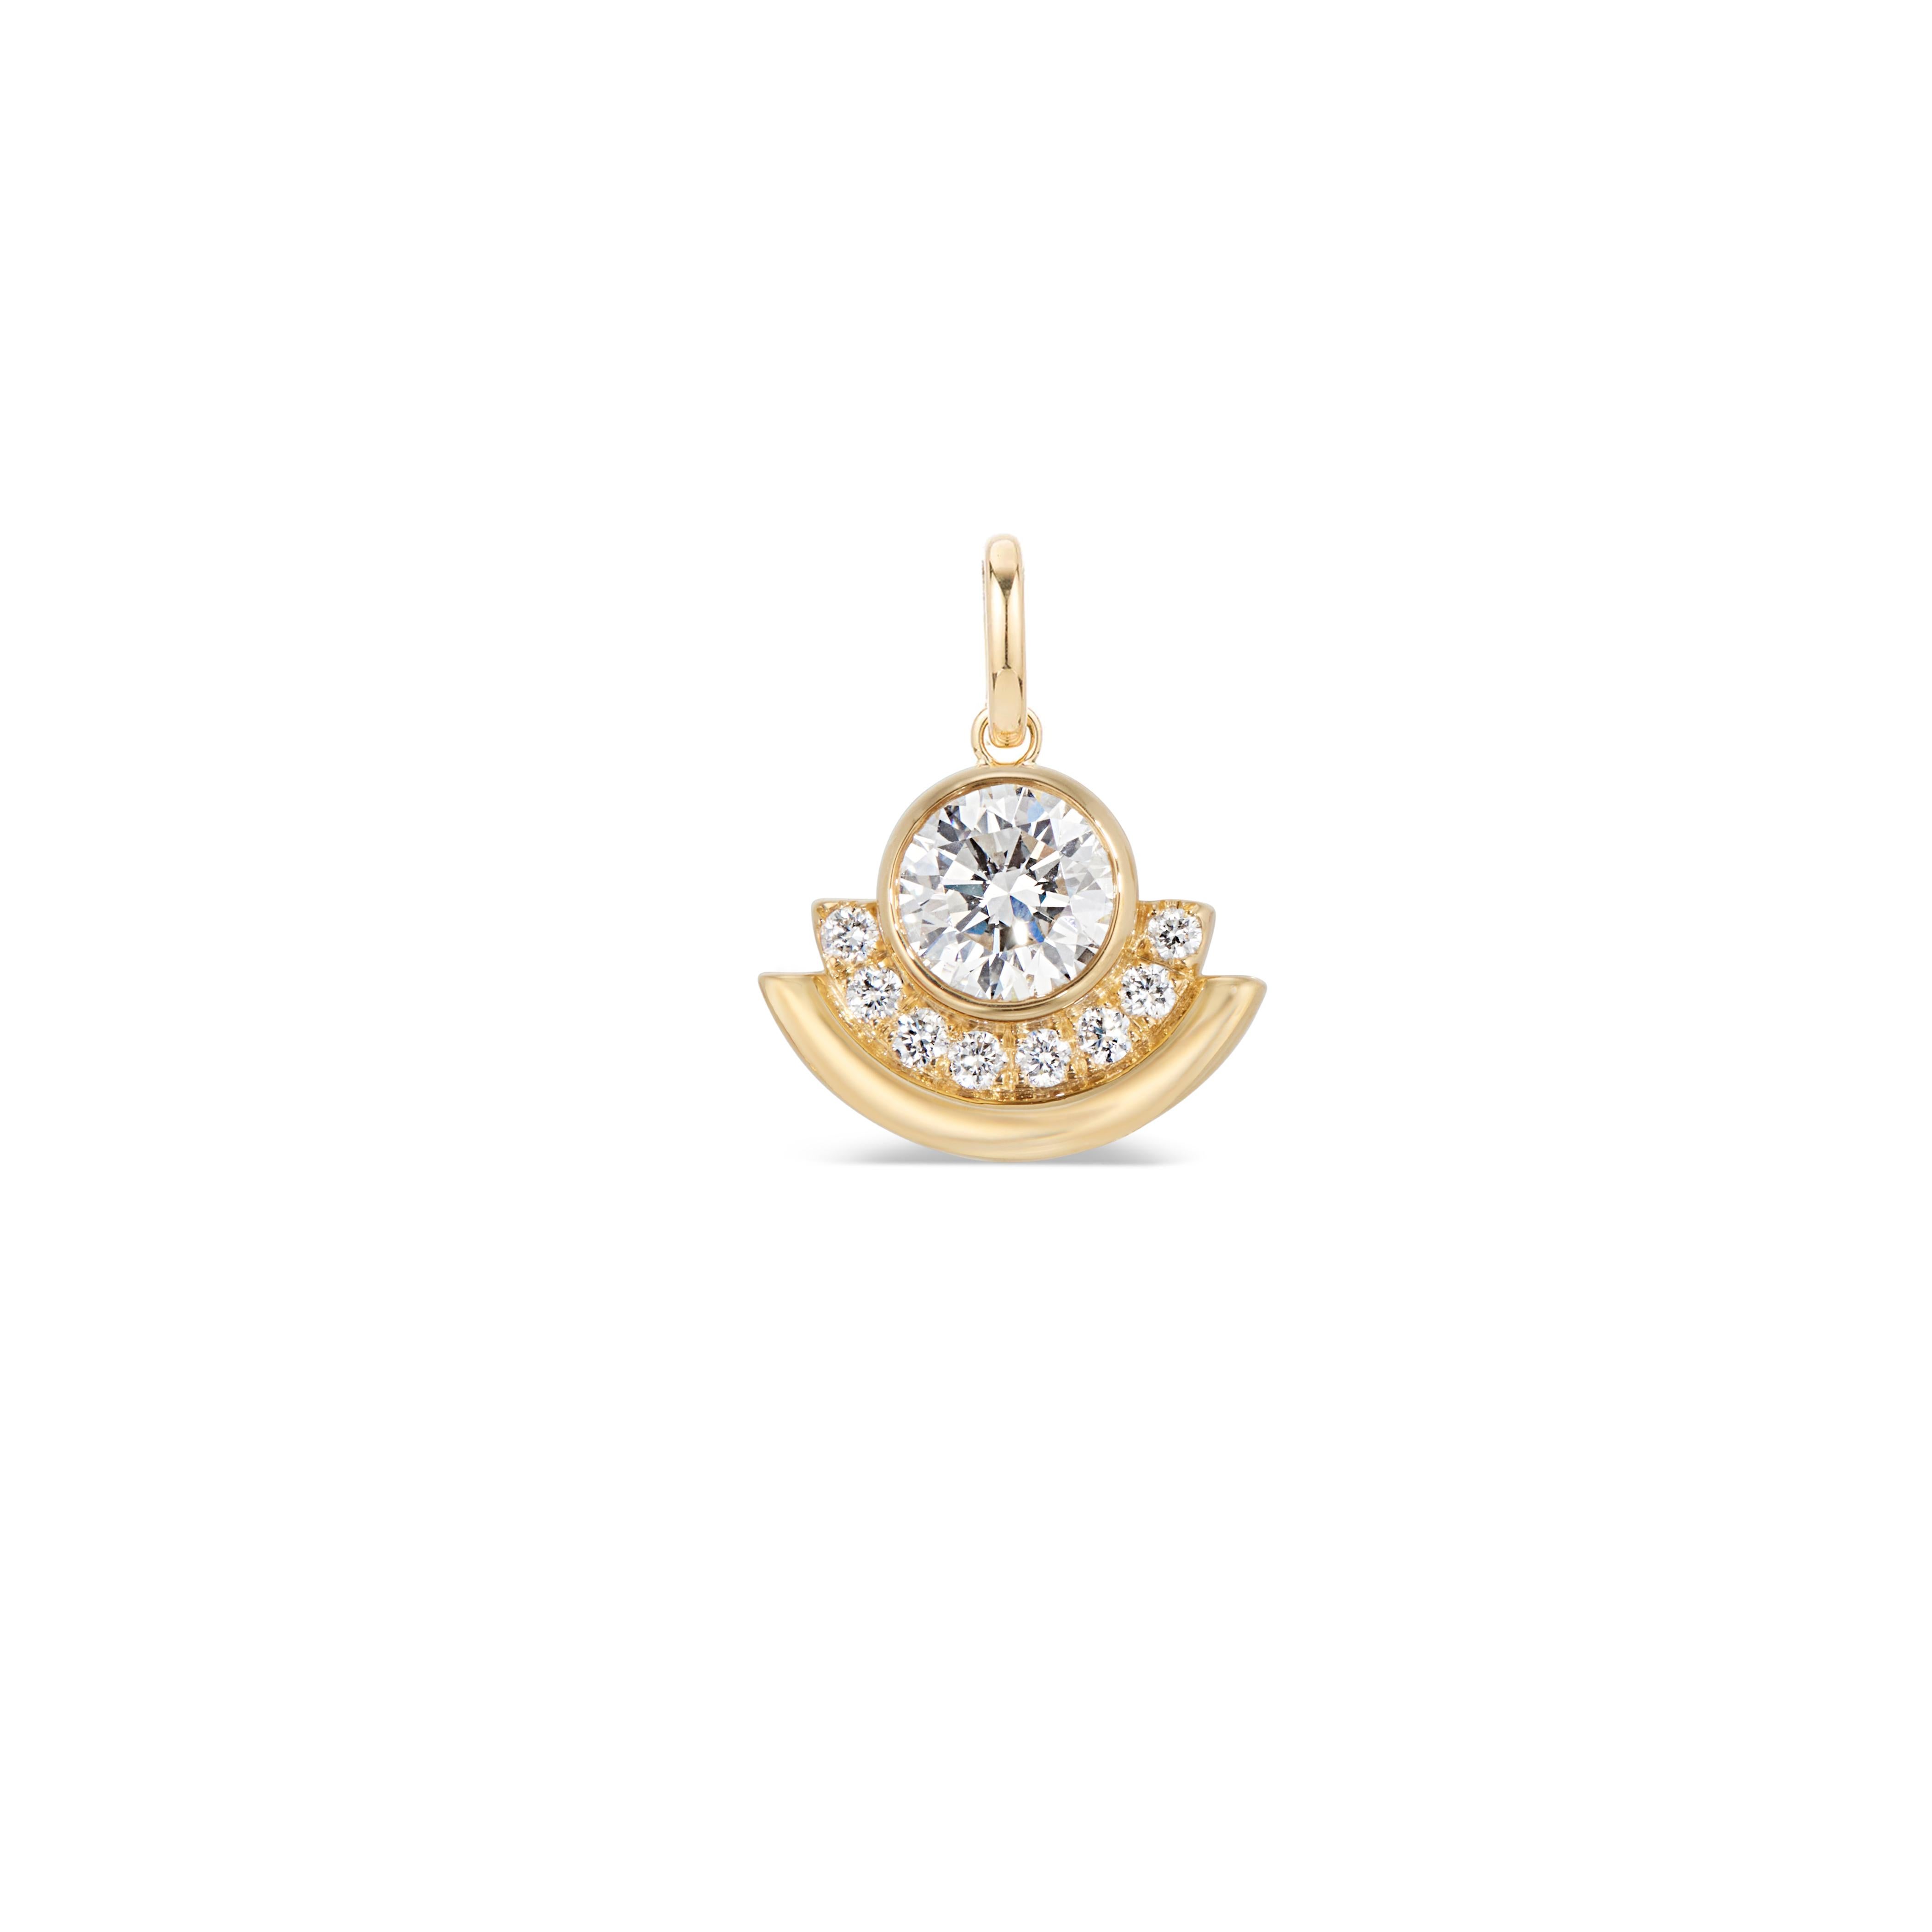 Taille brillant Breloque Arc en or Brilliante avec diamants taille brillant de 0,8 carats en vente